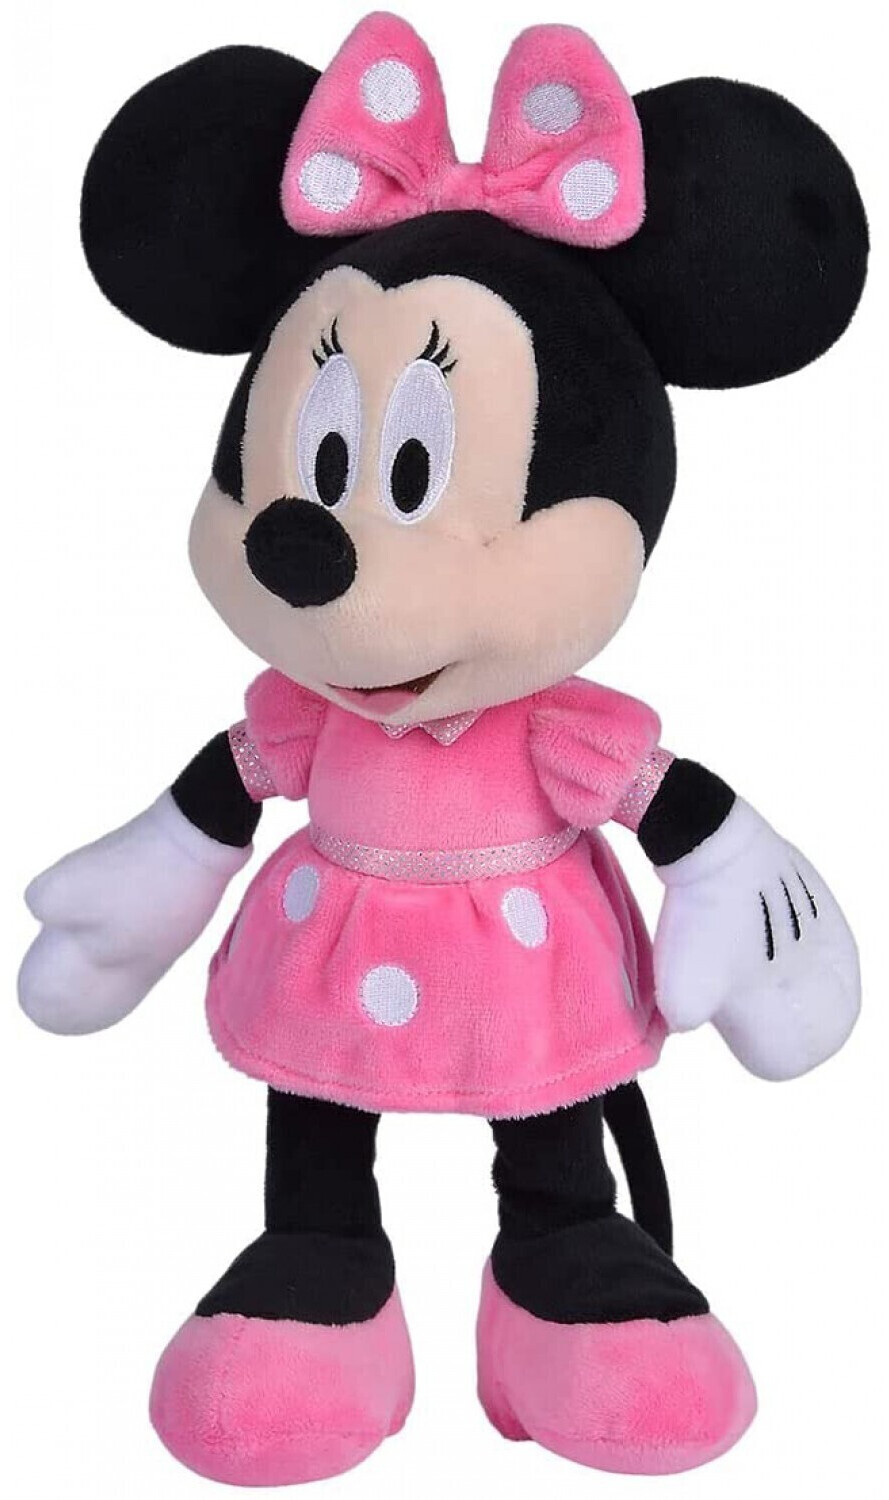 Simba Disney Minnie 25cm au meilleur prix sur